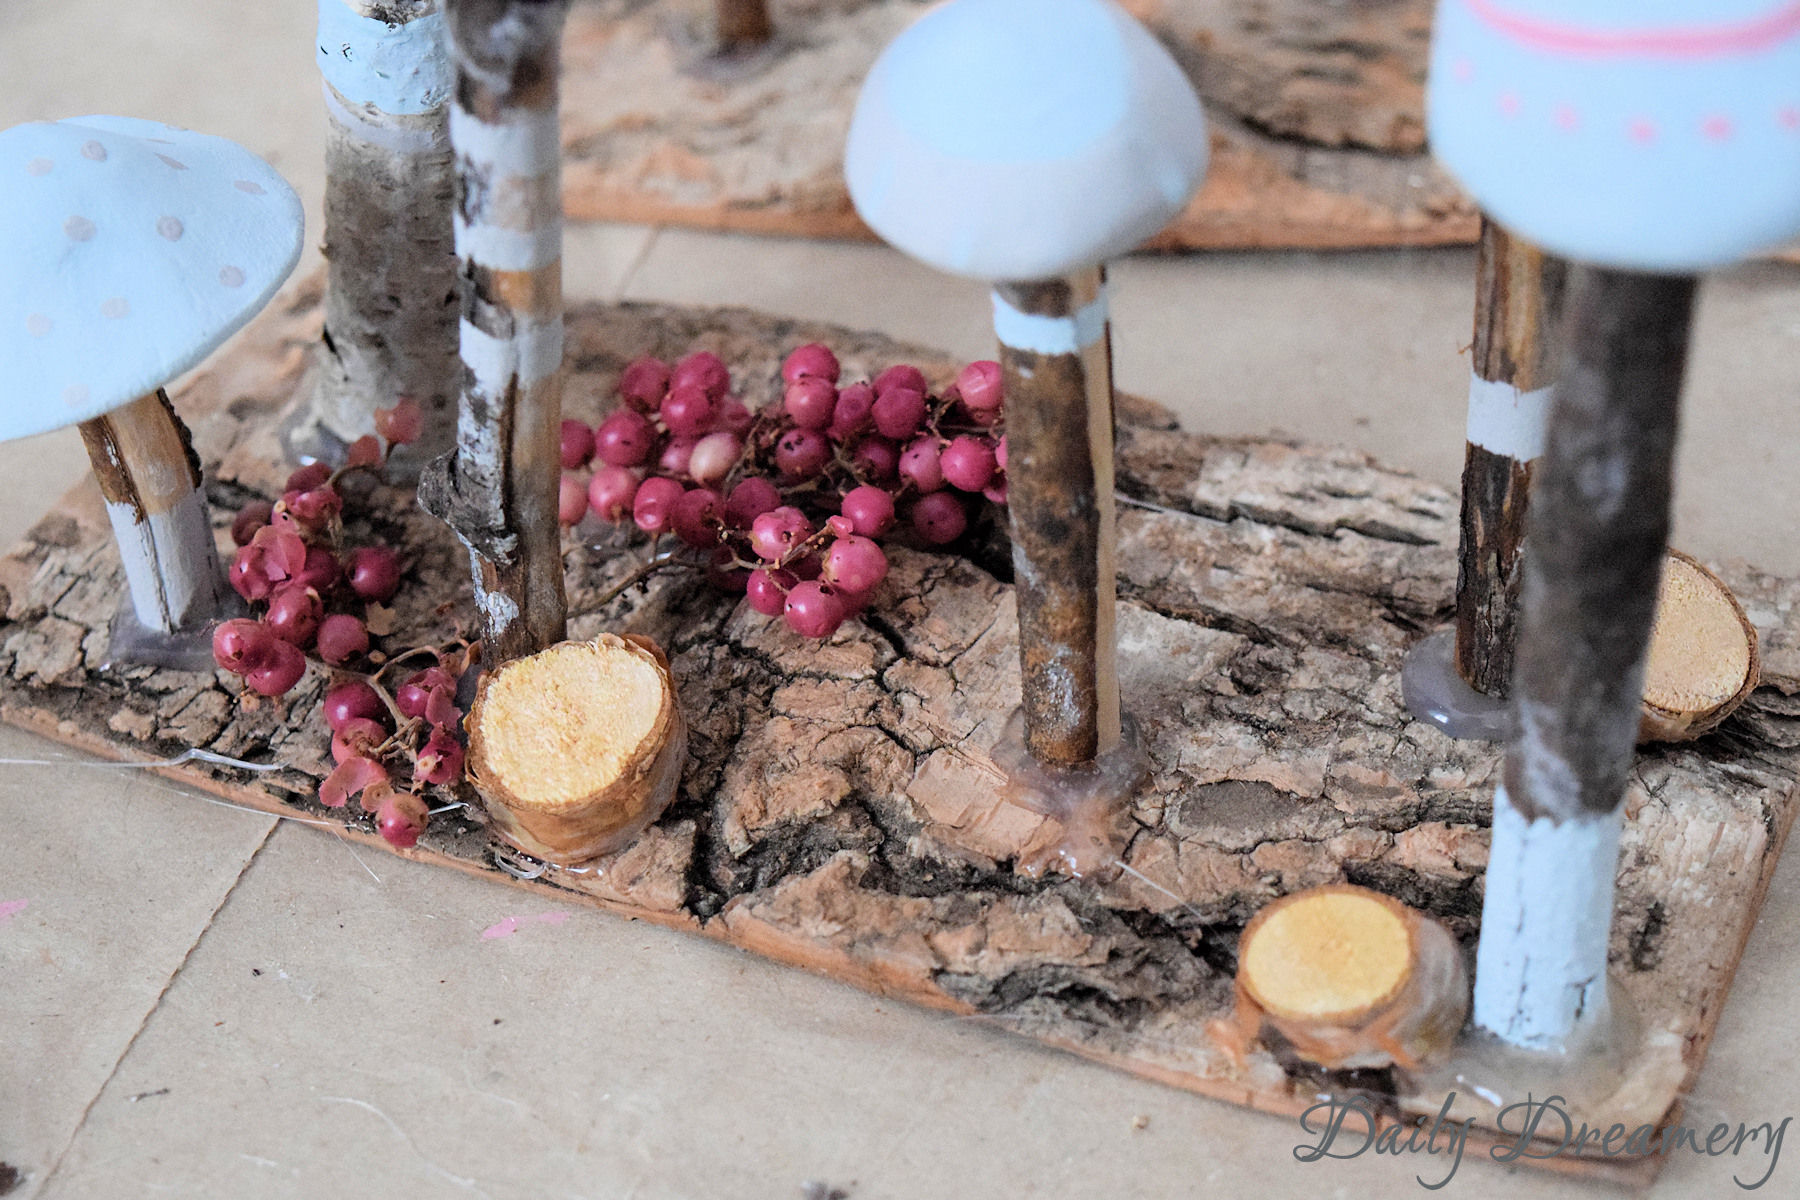 Zauberhafte Mini-Pilze sorgen für magische herbstliche Stimmung in deinem Zuhause. DIY-Anleitung #diyanleitung #herbst #dekoration